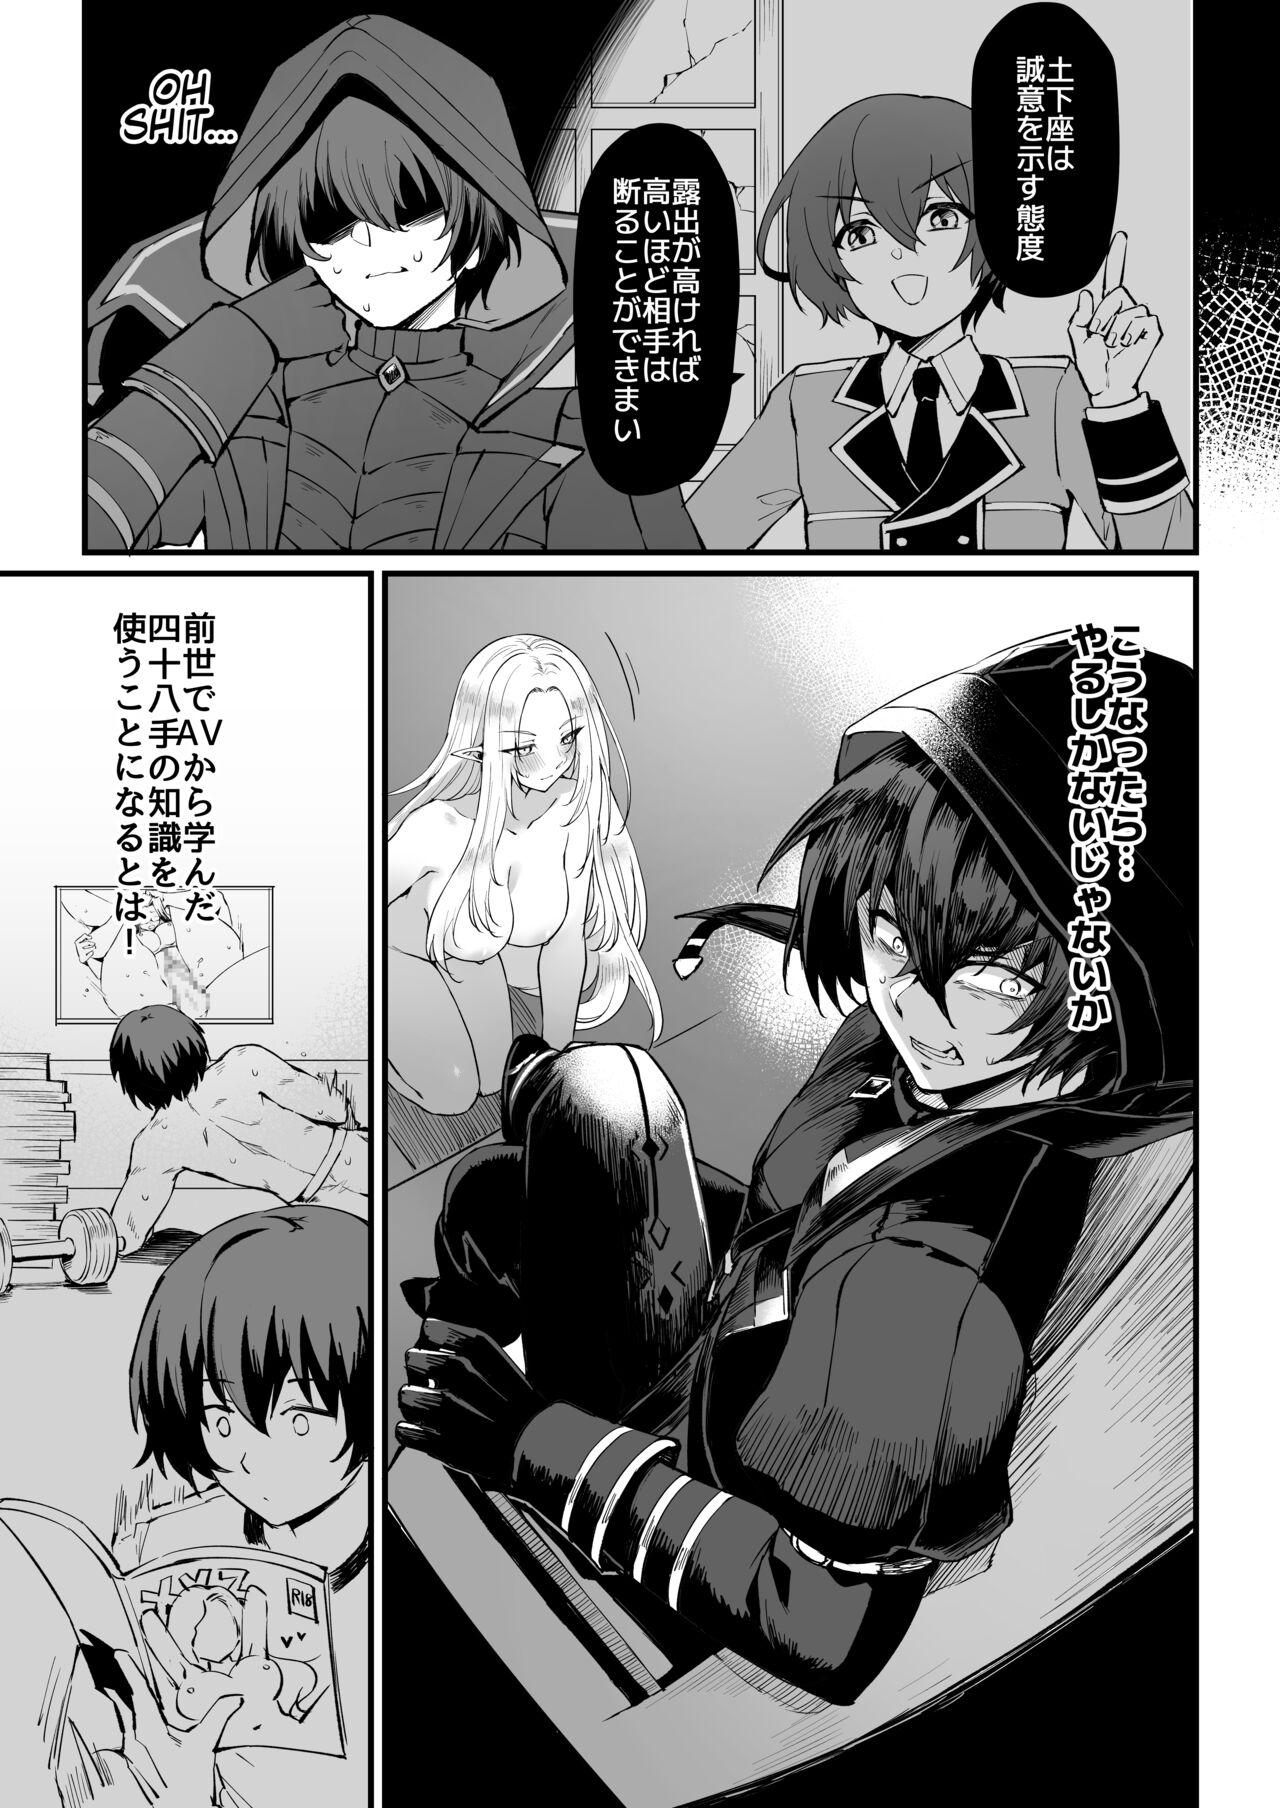 Gaygroupsex I NEED MORE POWER! - Kage no jitsuryokusha ni naritakute | the eminence in shadow Pica - Page 6